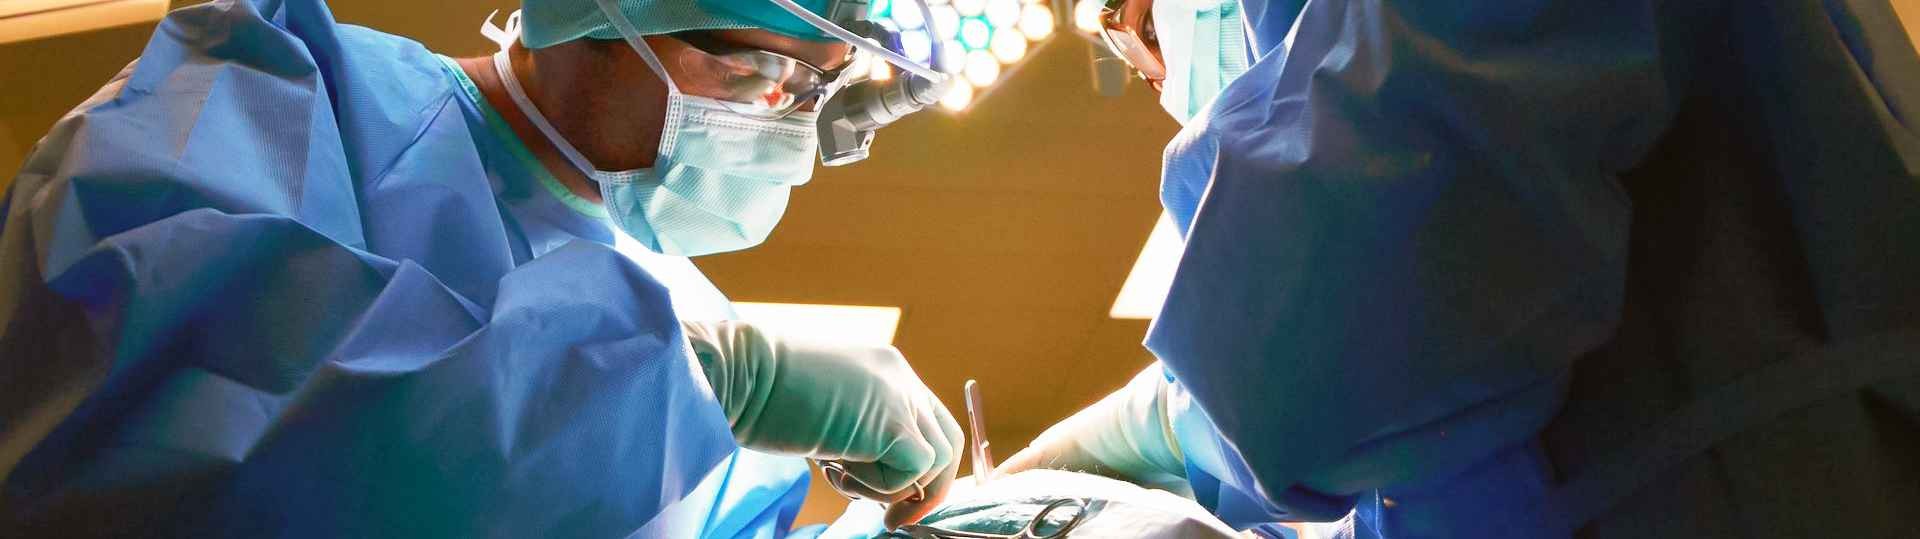 Médicos de La Paz operan a una paciente despierta para curar la epilepsia